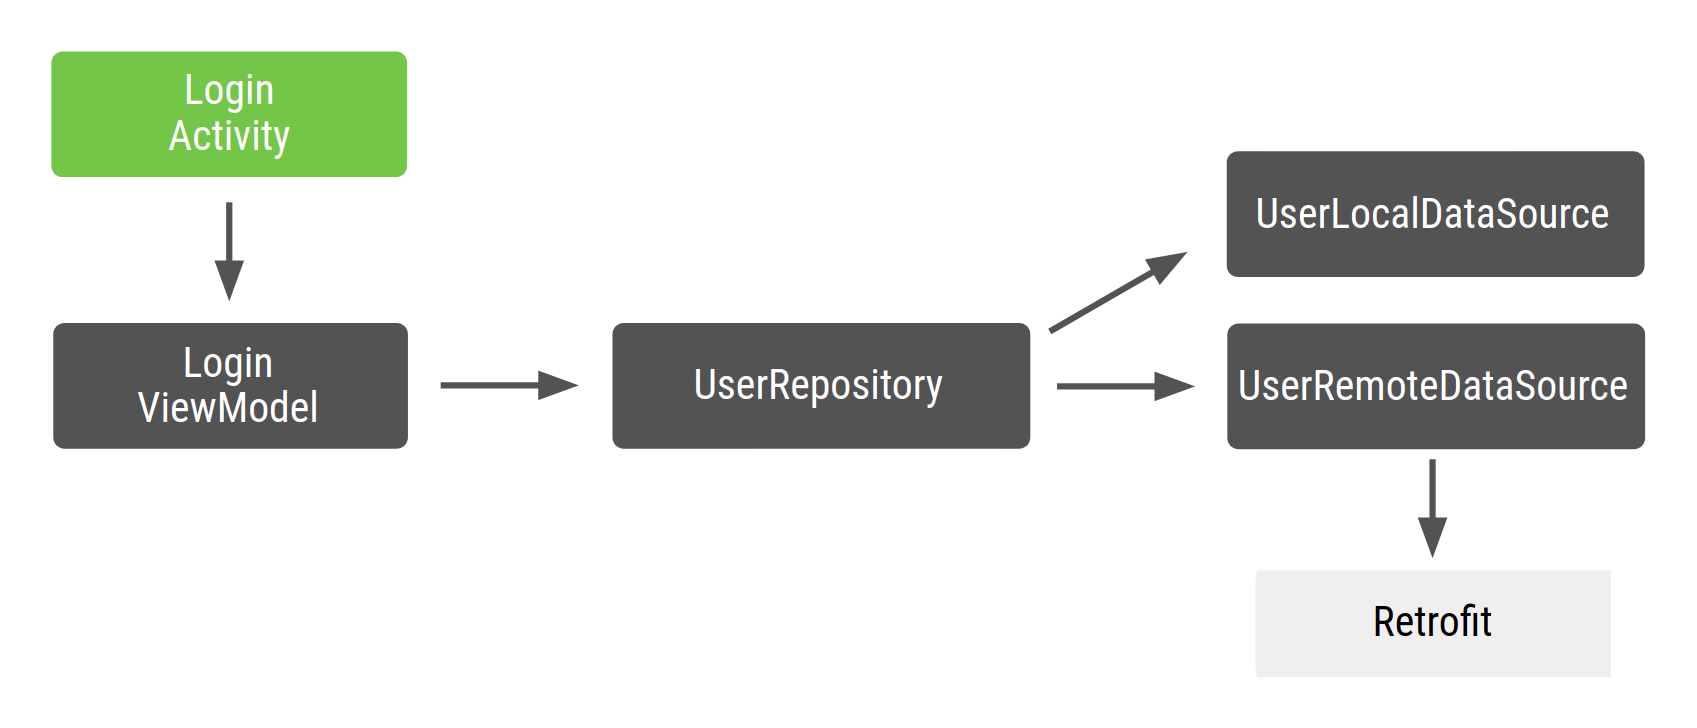 LoginActivity zależy od parametru LoginViewModel, który zależy od klasy UserRepository, która zależy od wartości UserLocalDataSource i UserRemoteDataSource, które z kolei zależą od modelu Retrofit.